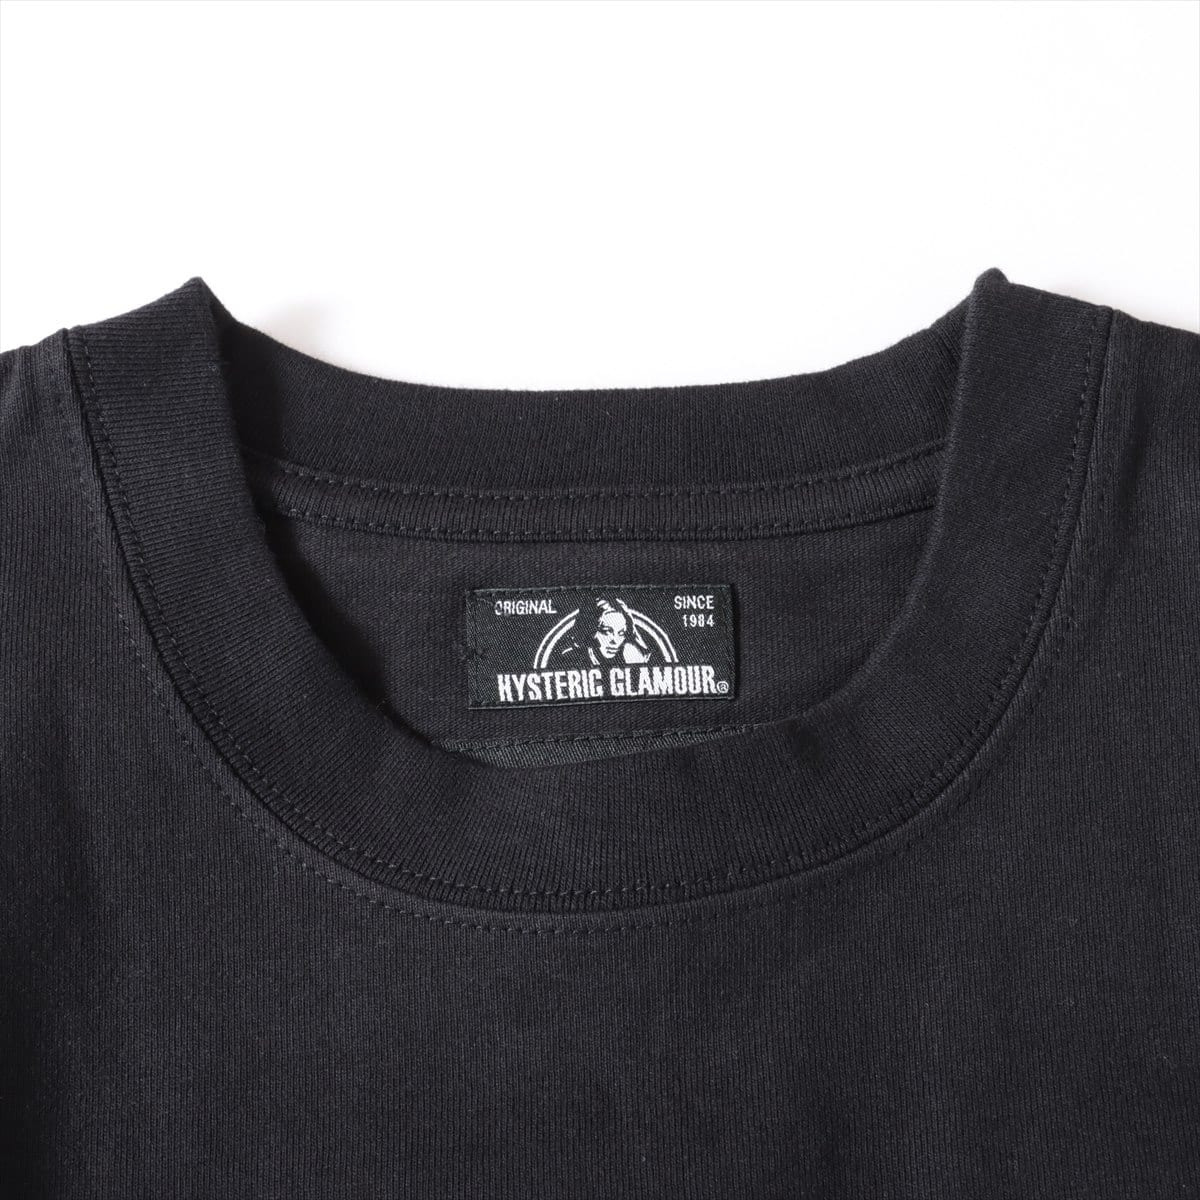 ウィンダンシー×ヒステリックグラマー 20AW コットン Tシャツ L メンズ ブラック  ロゴ